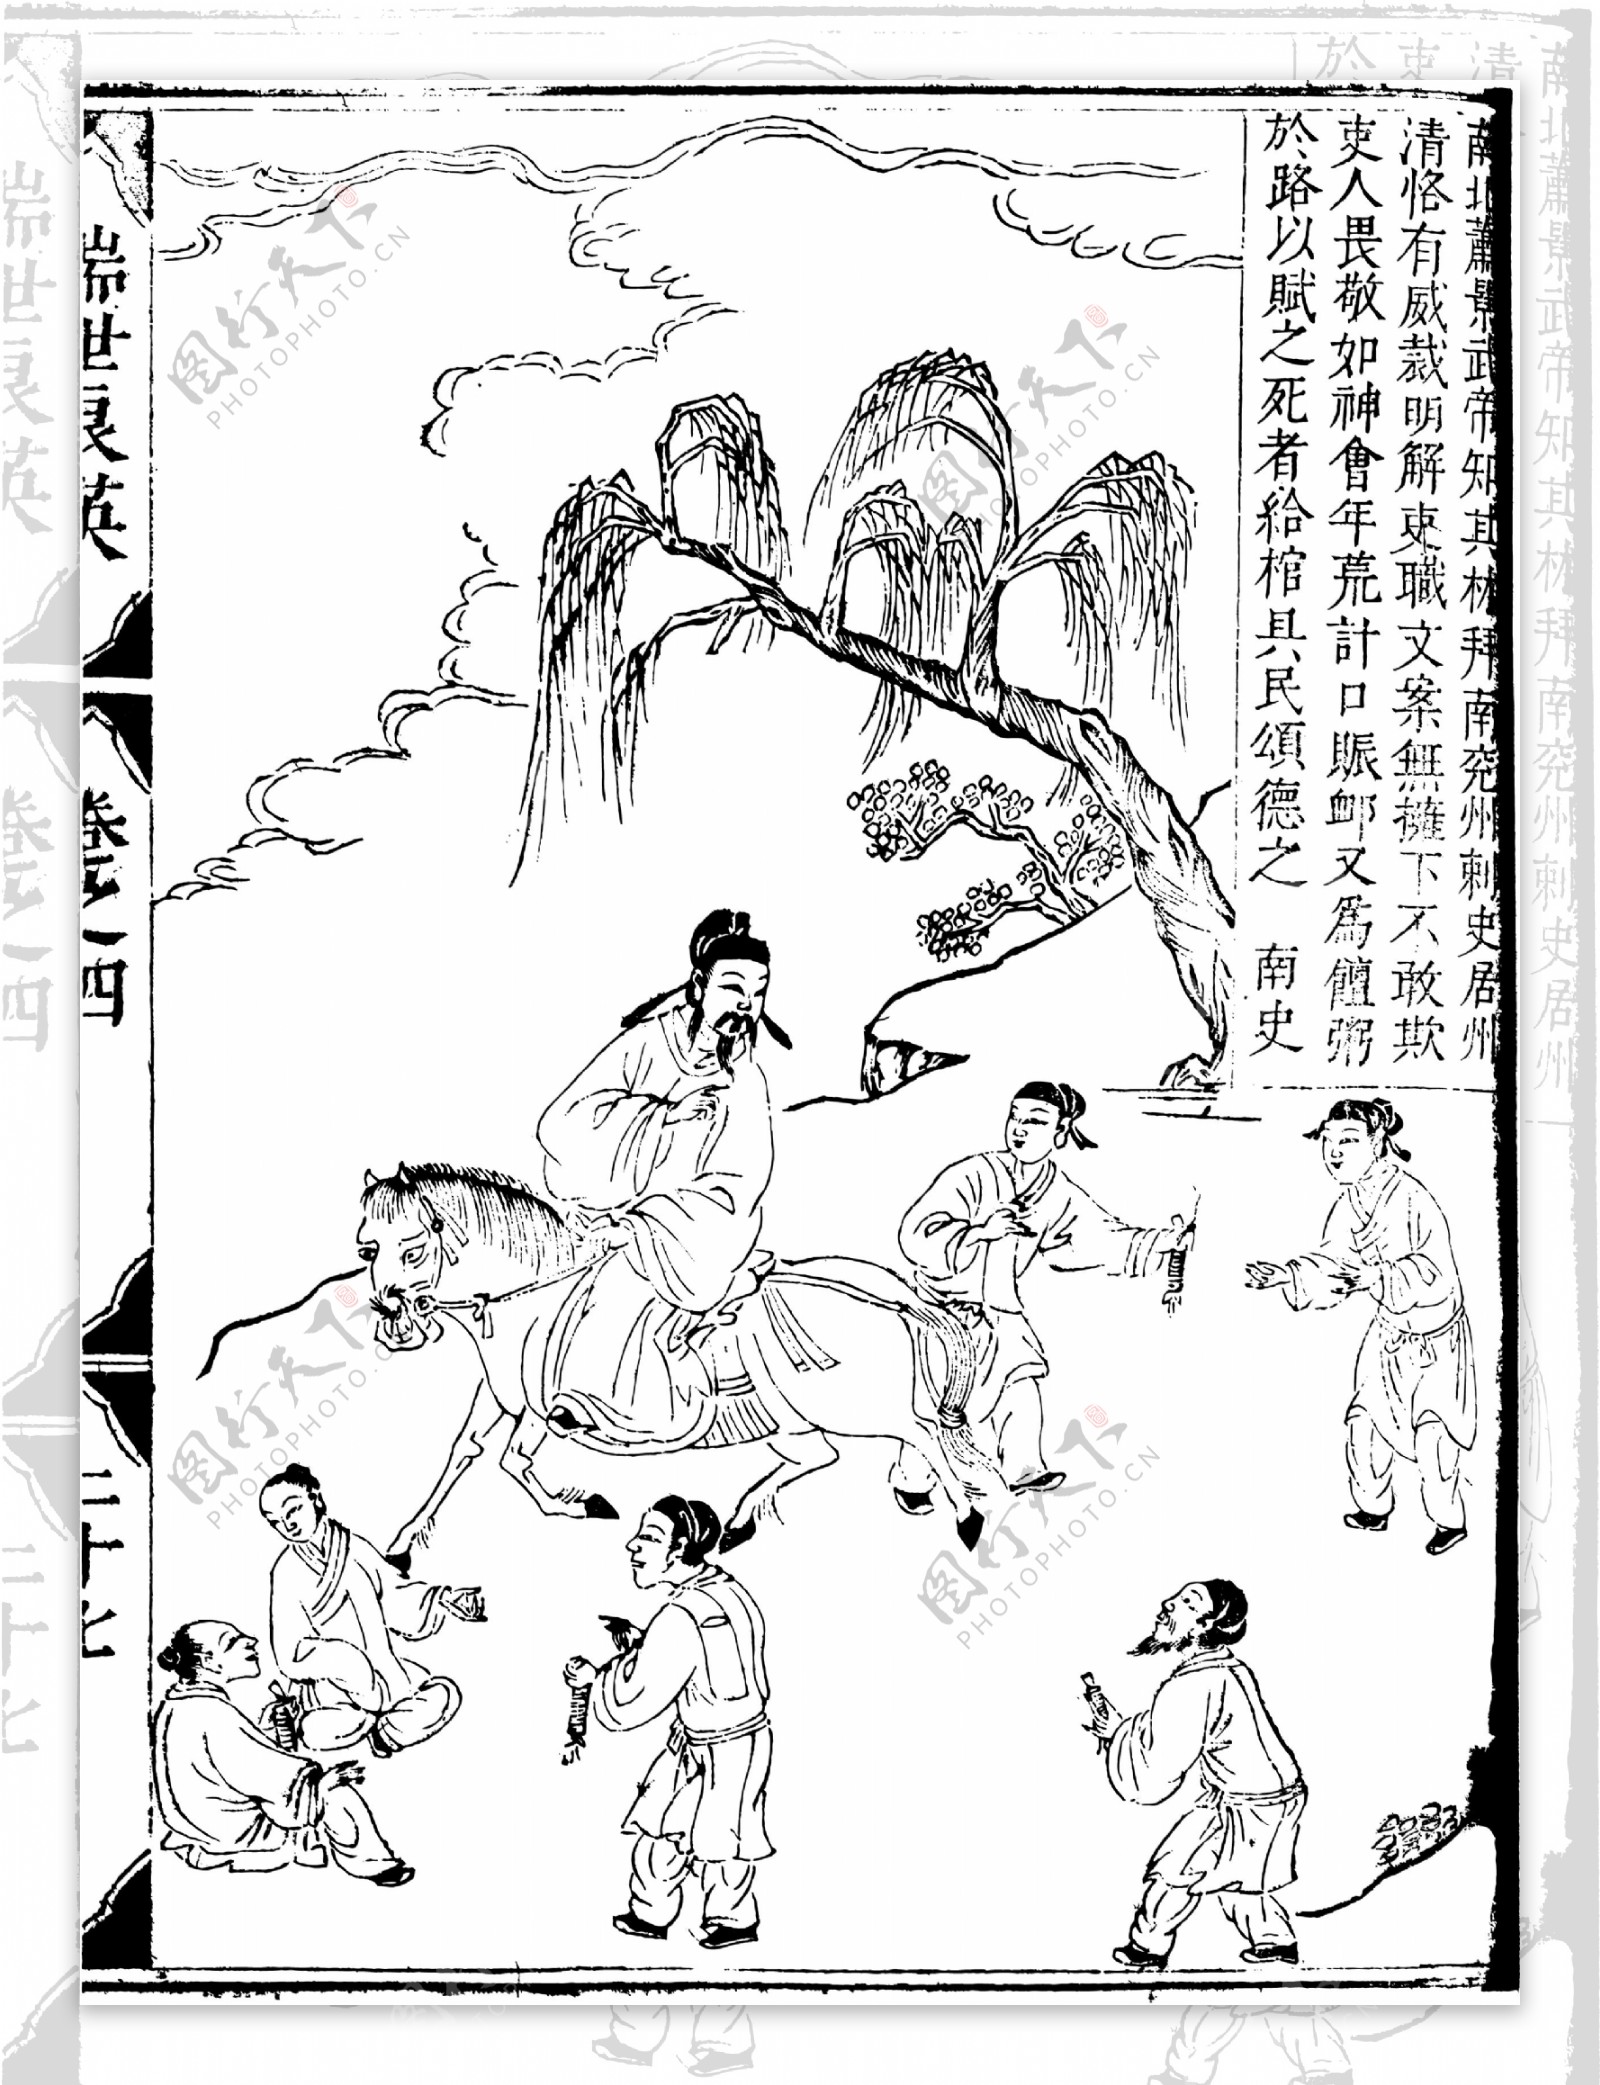 瑞世良英木刻版画中国传统文化05